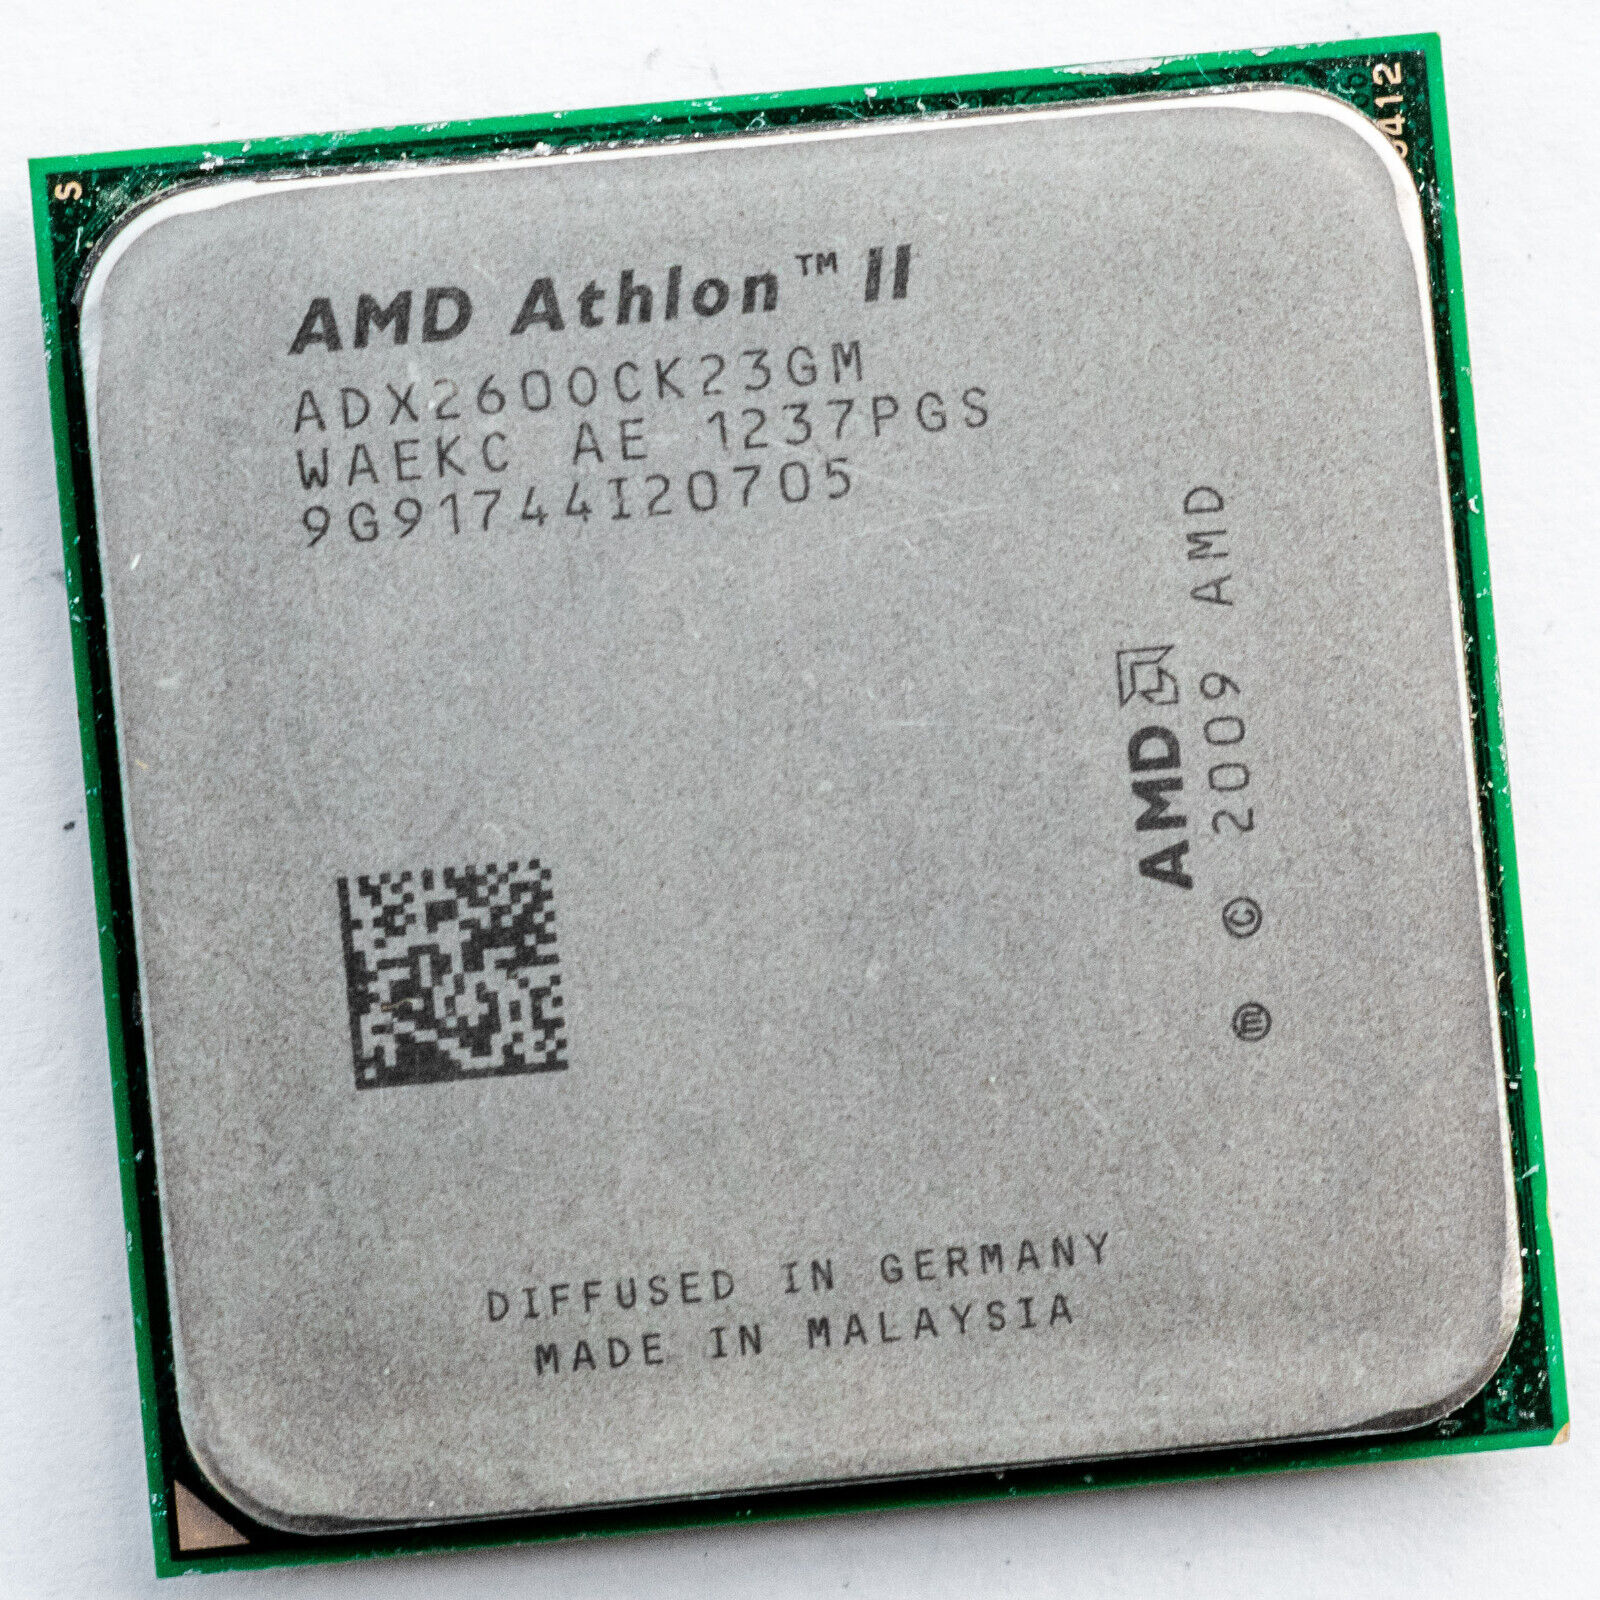 AMD Athlon II X2 260 ADX260OCK23GM 3.2GHz AM3 Dual Core Processor Regor 2MB 65W